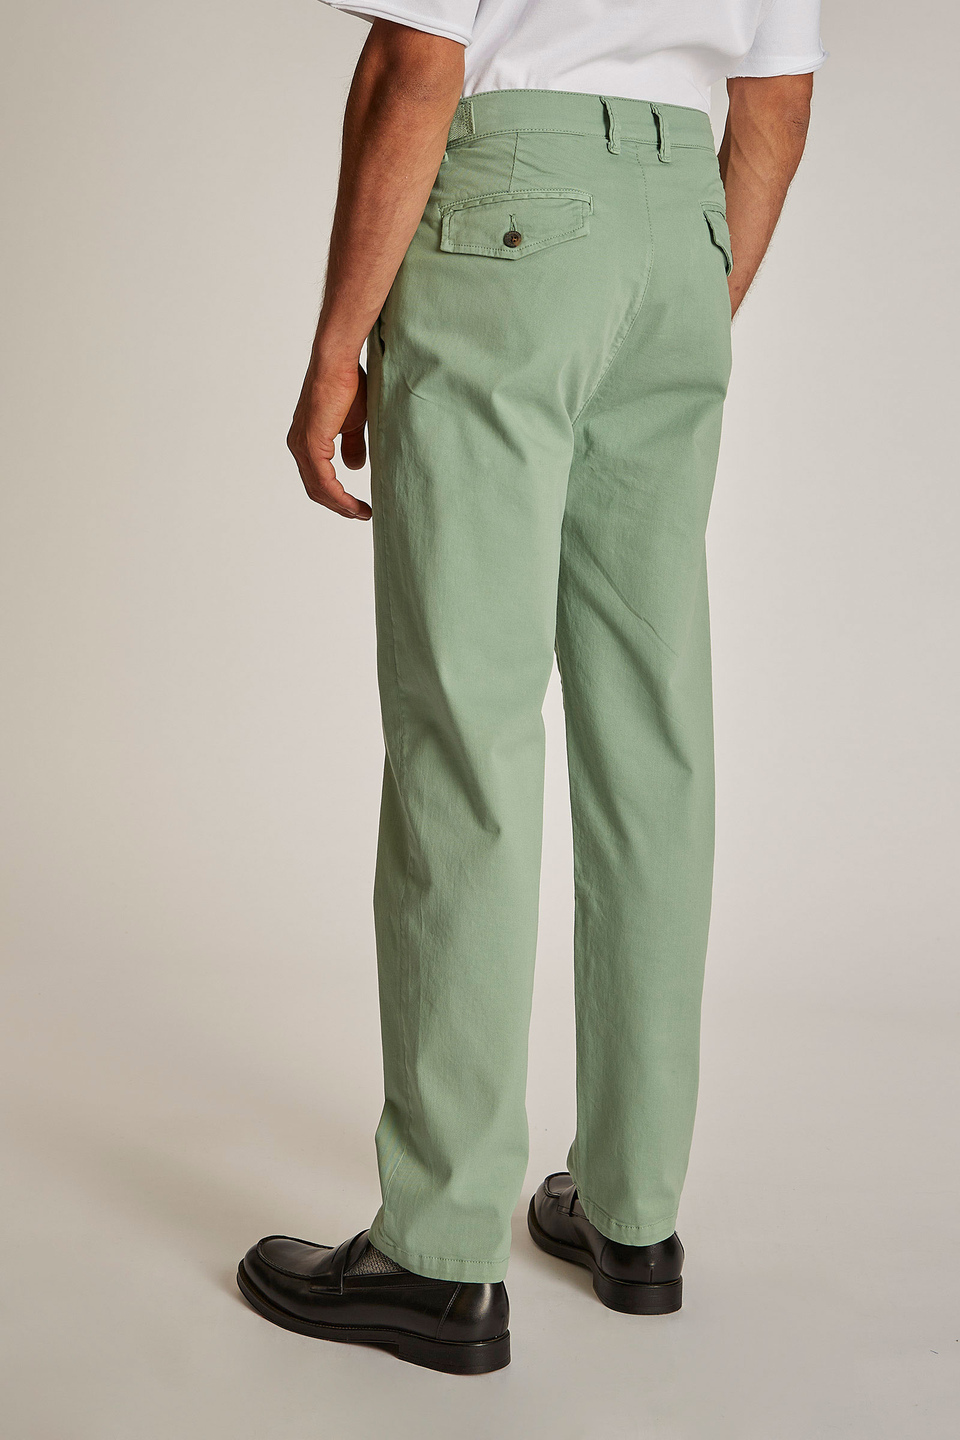 Pantalone da uomo modello chino regular fit | La Martina - Official Online Shop